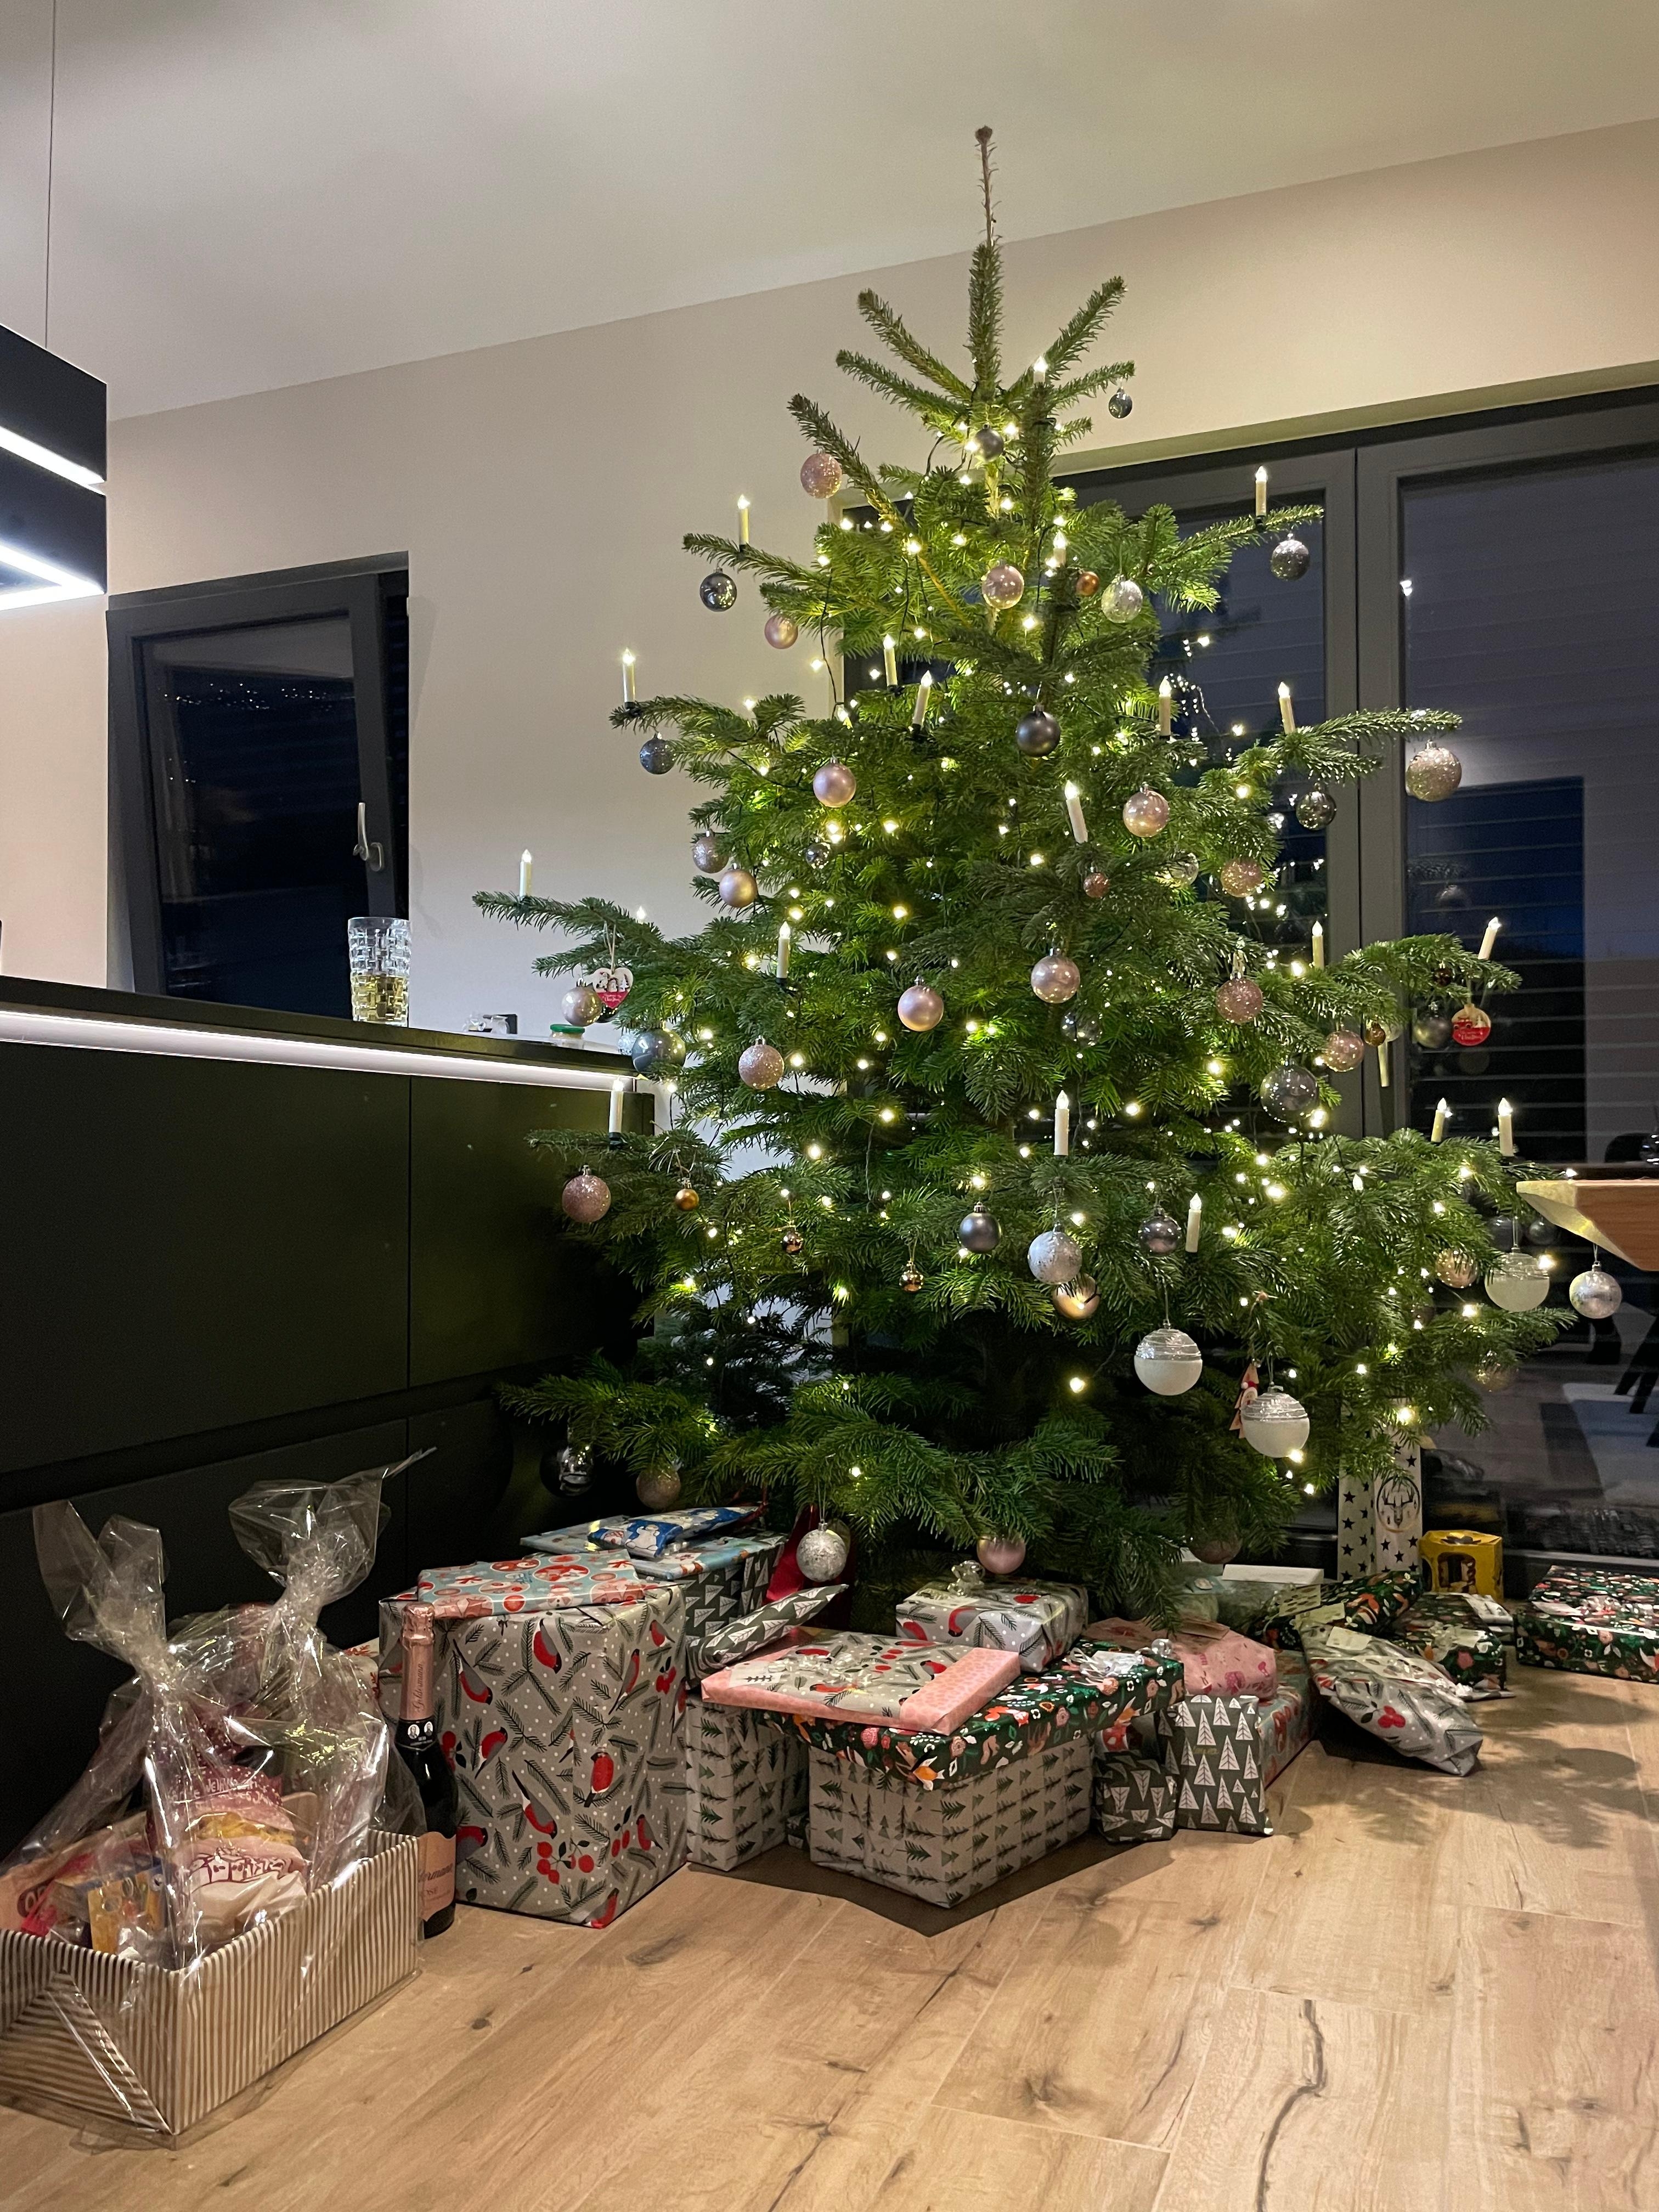 Unser Weihnachtsbaum 🎁

#weihnachten #geschenke #küche #wohnen #interior #holzfliesen #hausbau #einrichten 